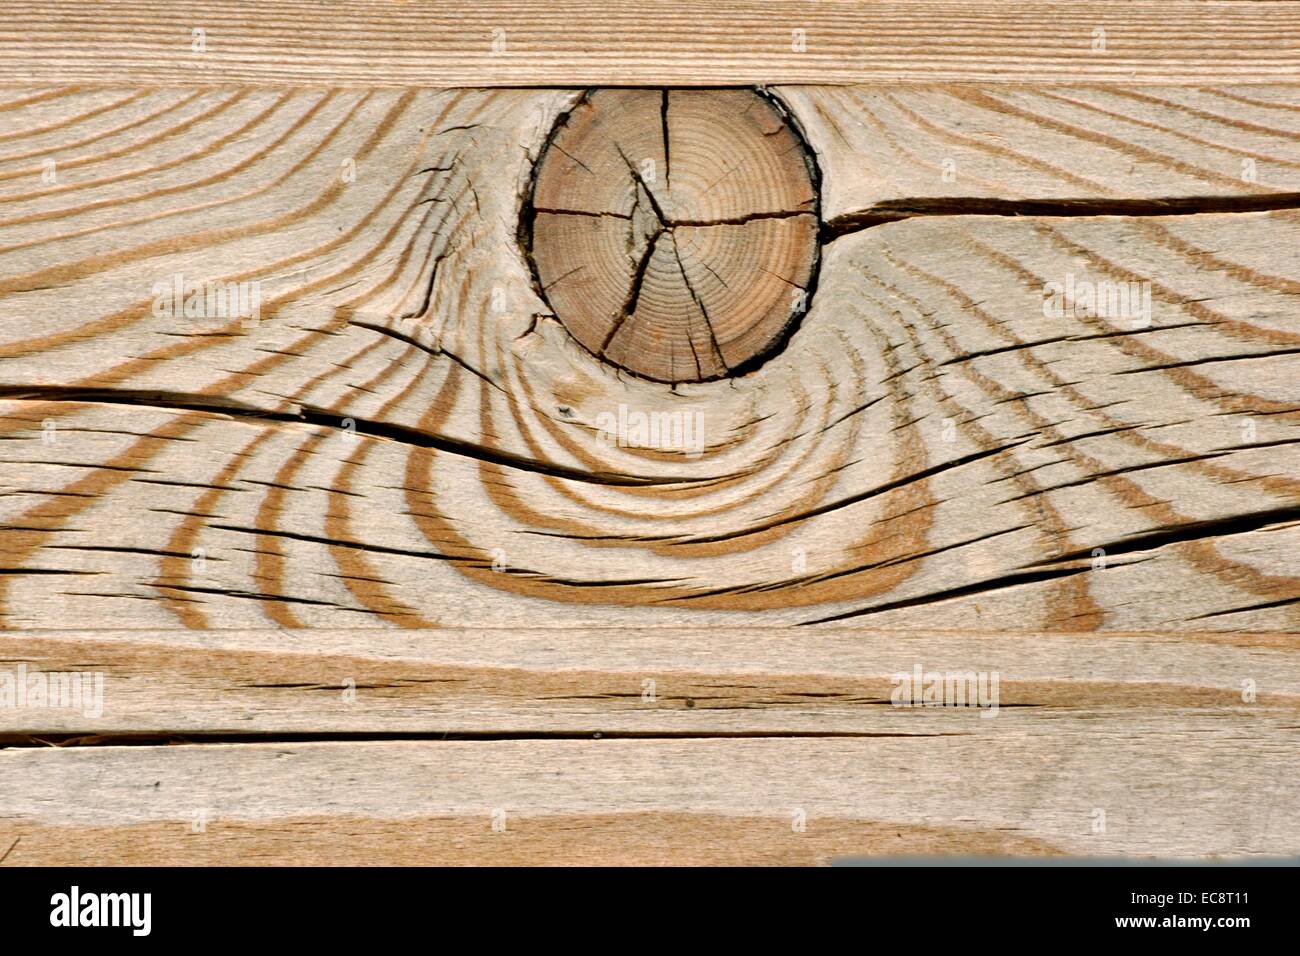 Rändel in einem Split-Holz. Stockfoto